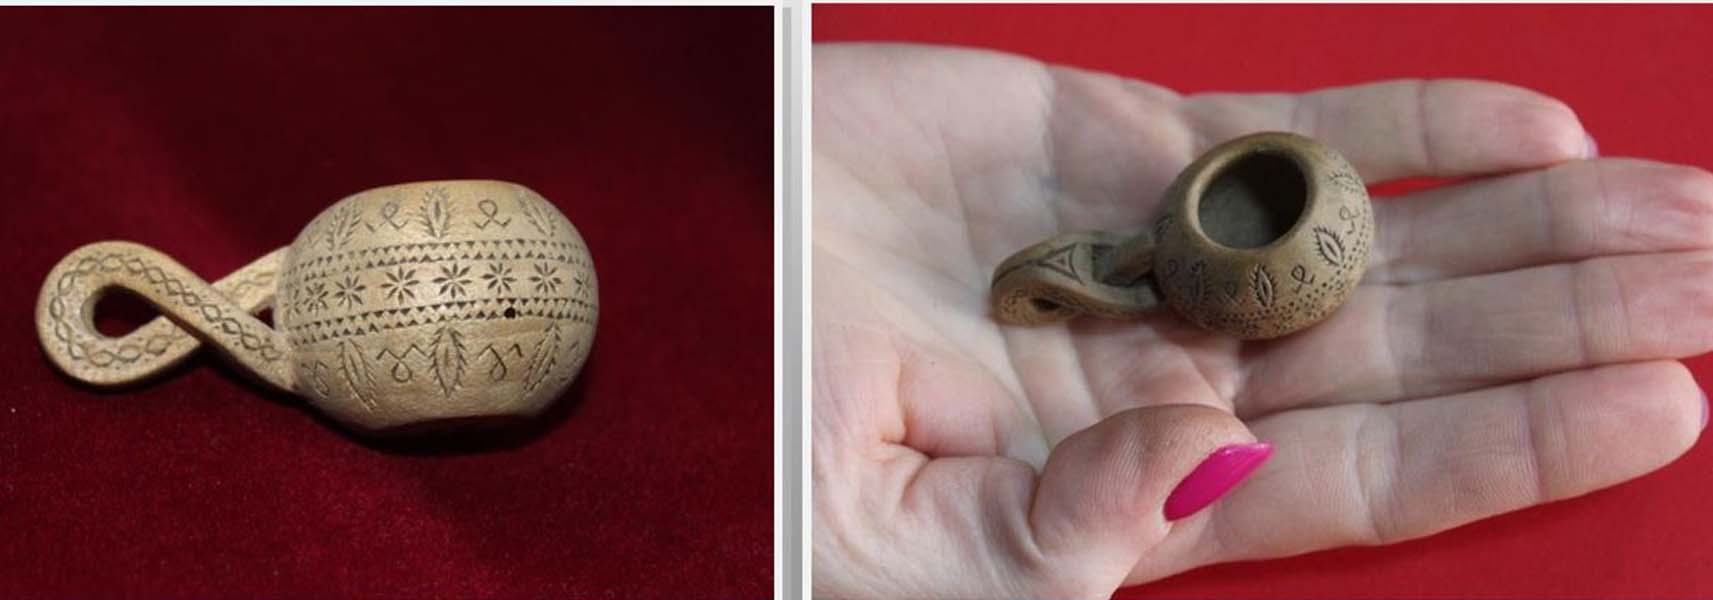 Read more about the article Căuc miniatural – obiect aflat în patrimoniul Muzeului de Etnografie Orăştie